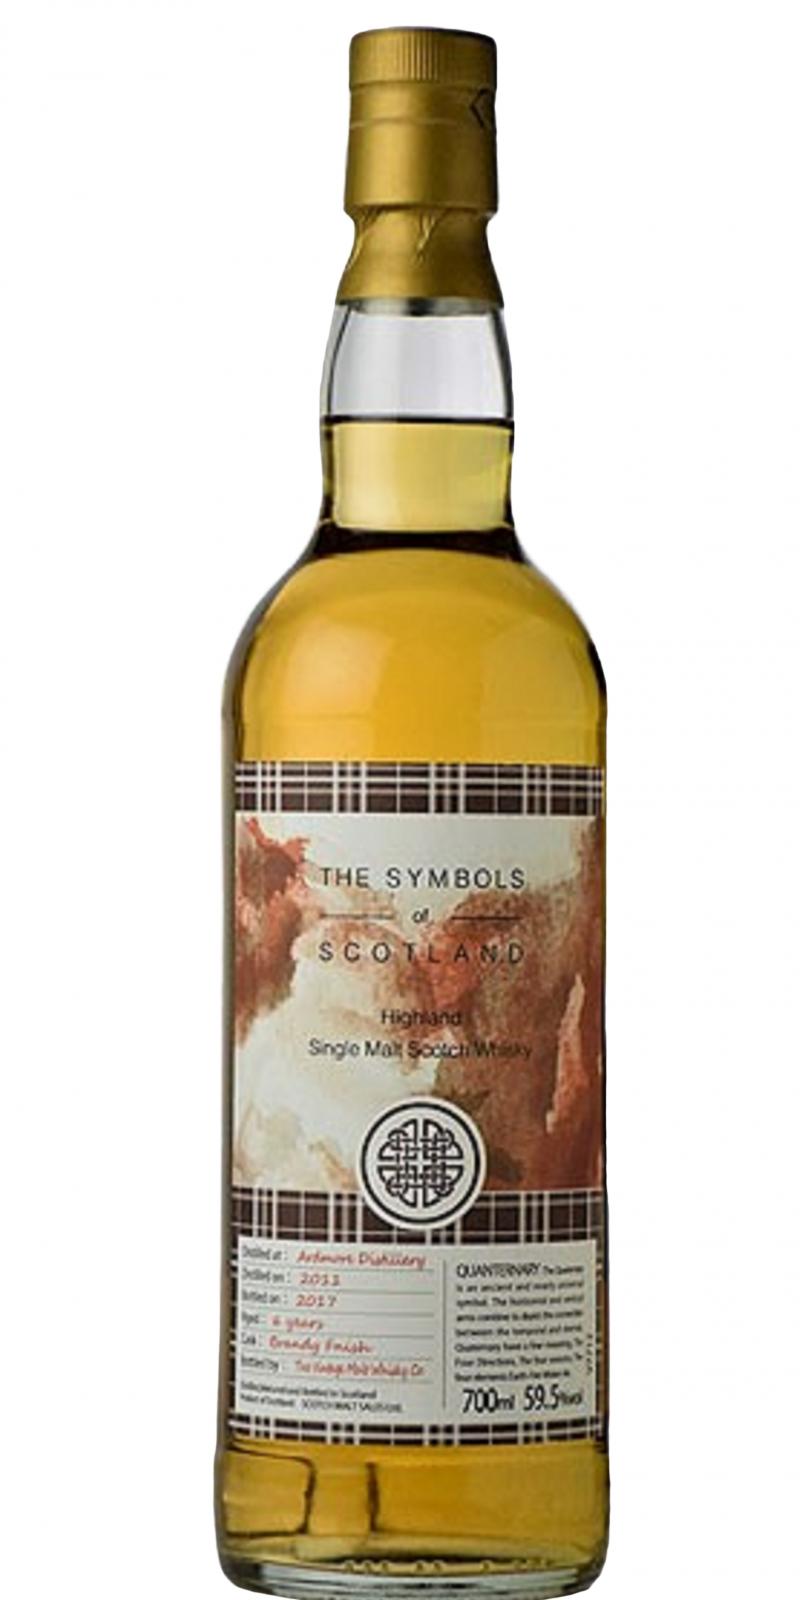 Ardmore 2011 VM The Symbols of Scotland Brandy Finish Scotch Malt Sales Ltd. for Shinanoya 59.5% 700ml